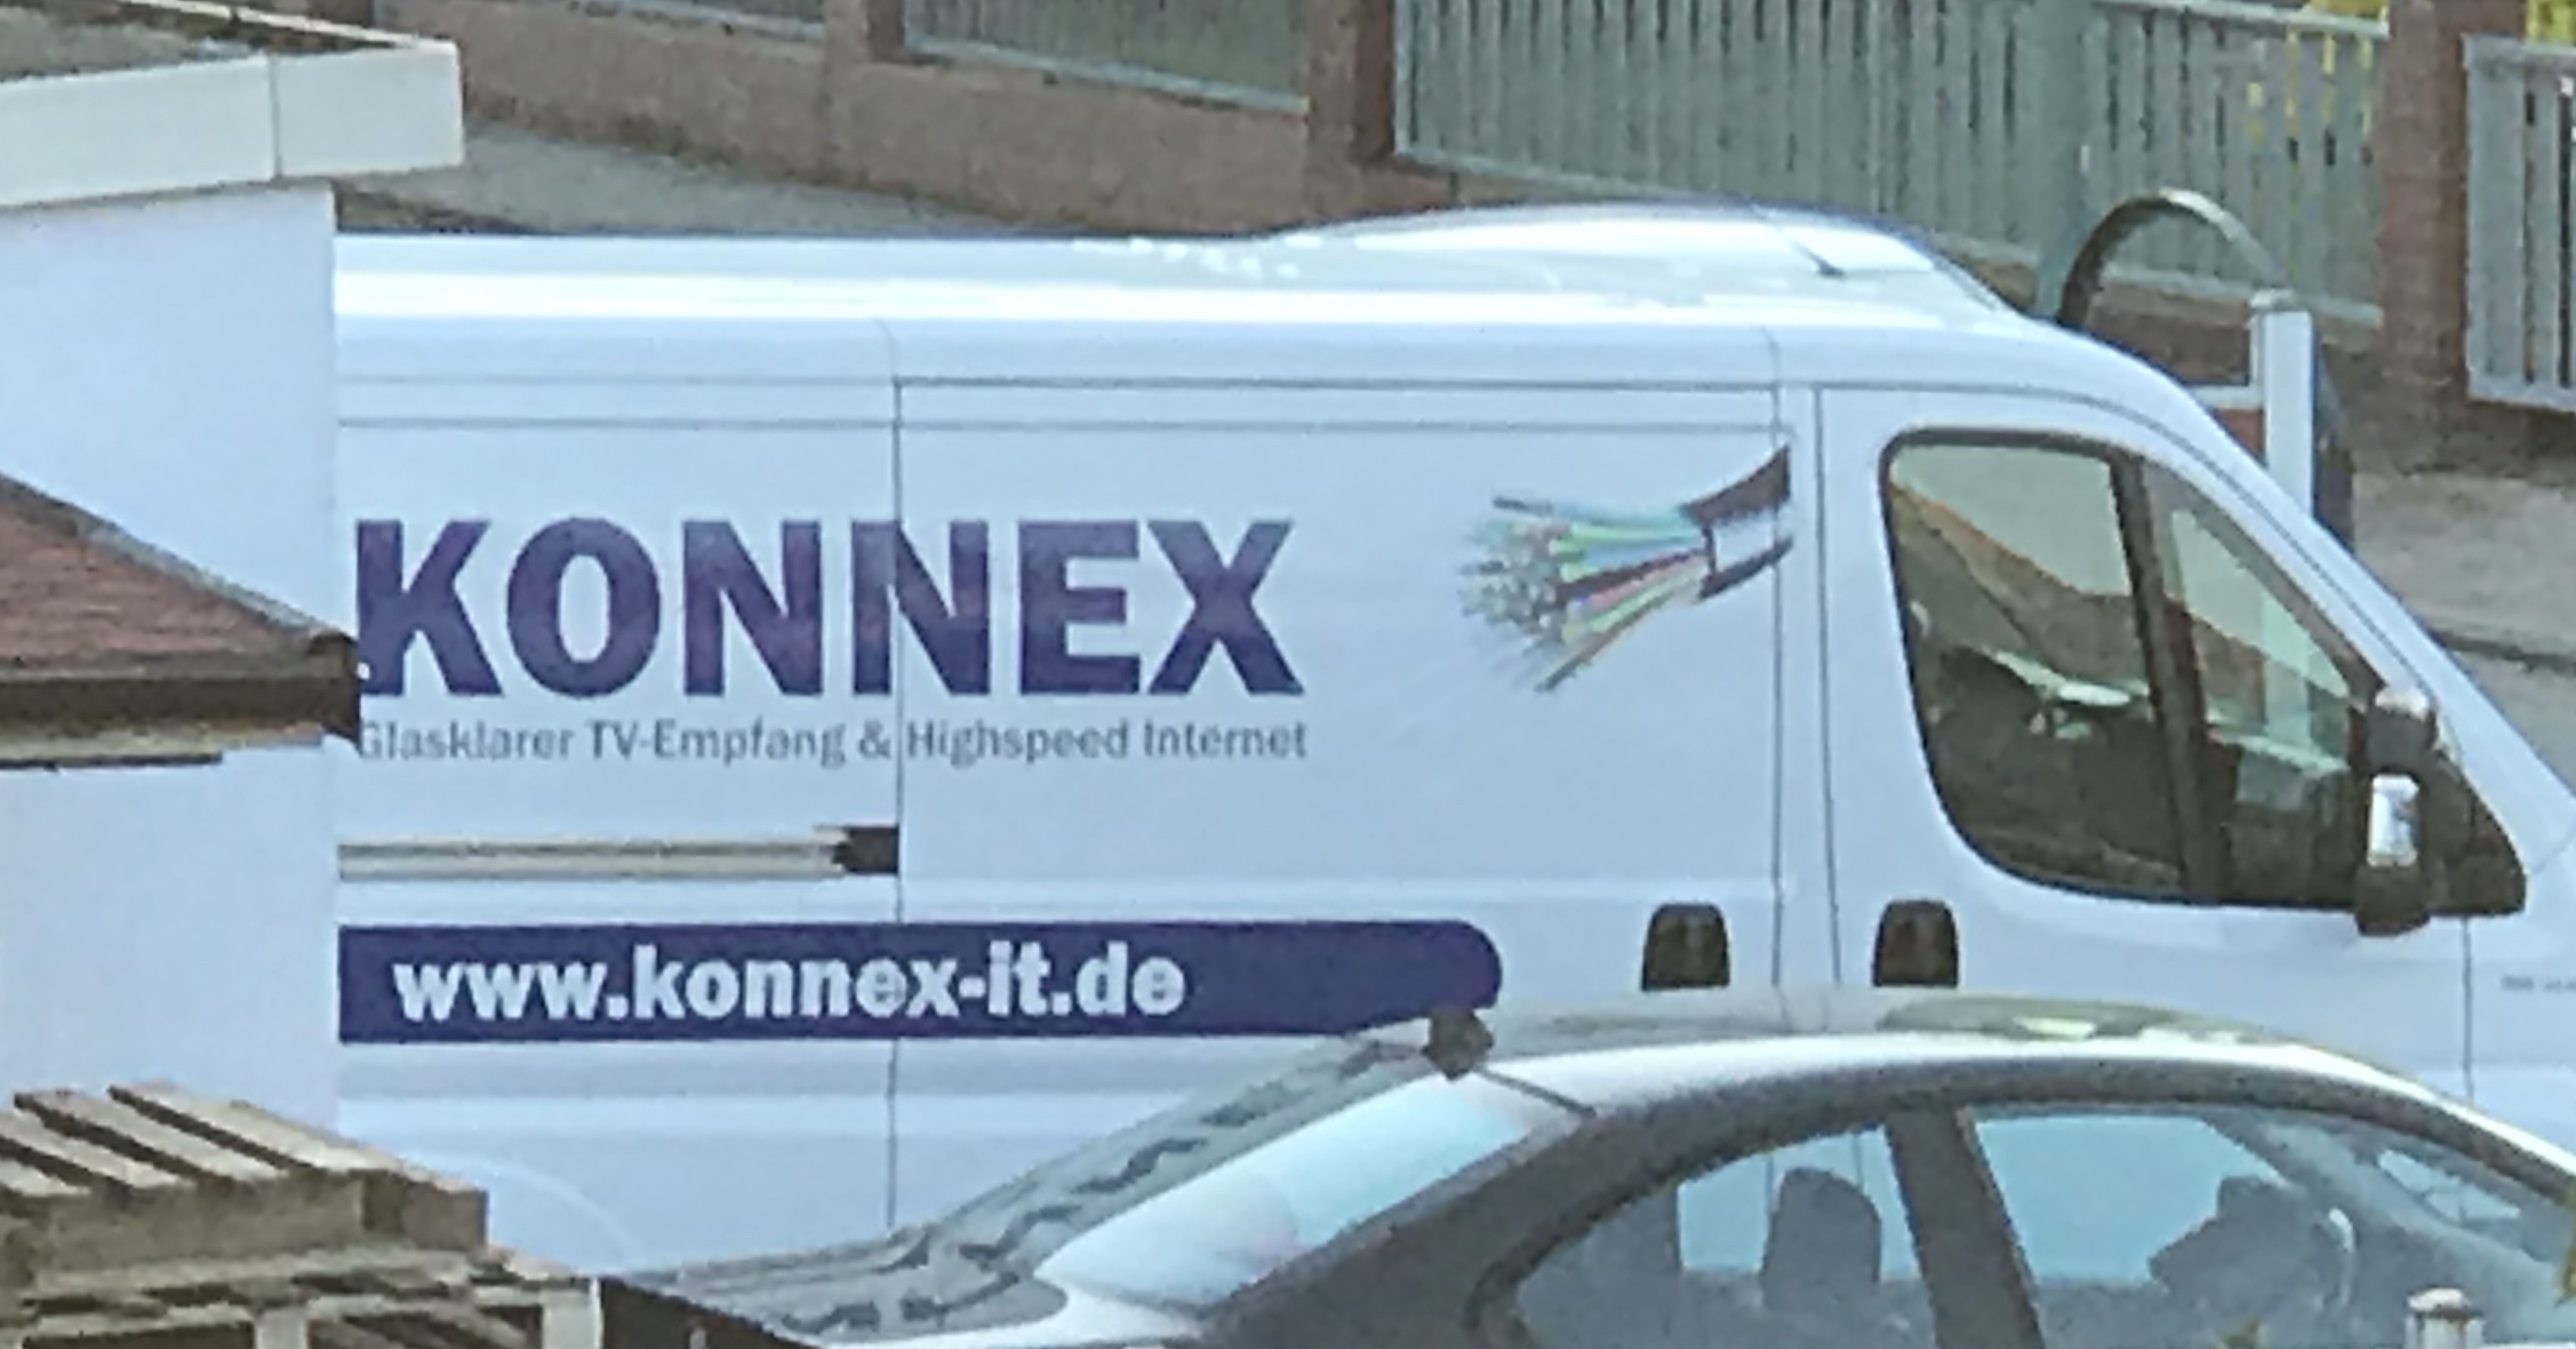 Bild 1 Konnex-IT GmbH in Hameln